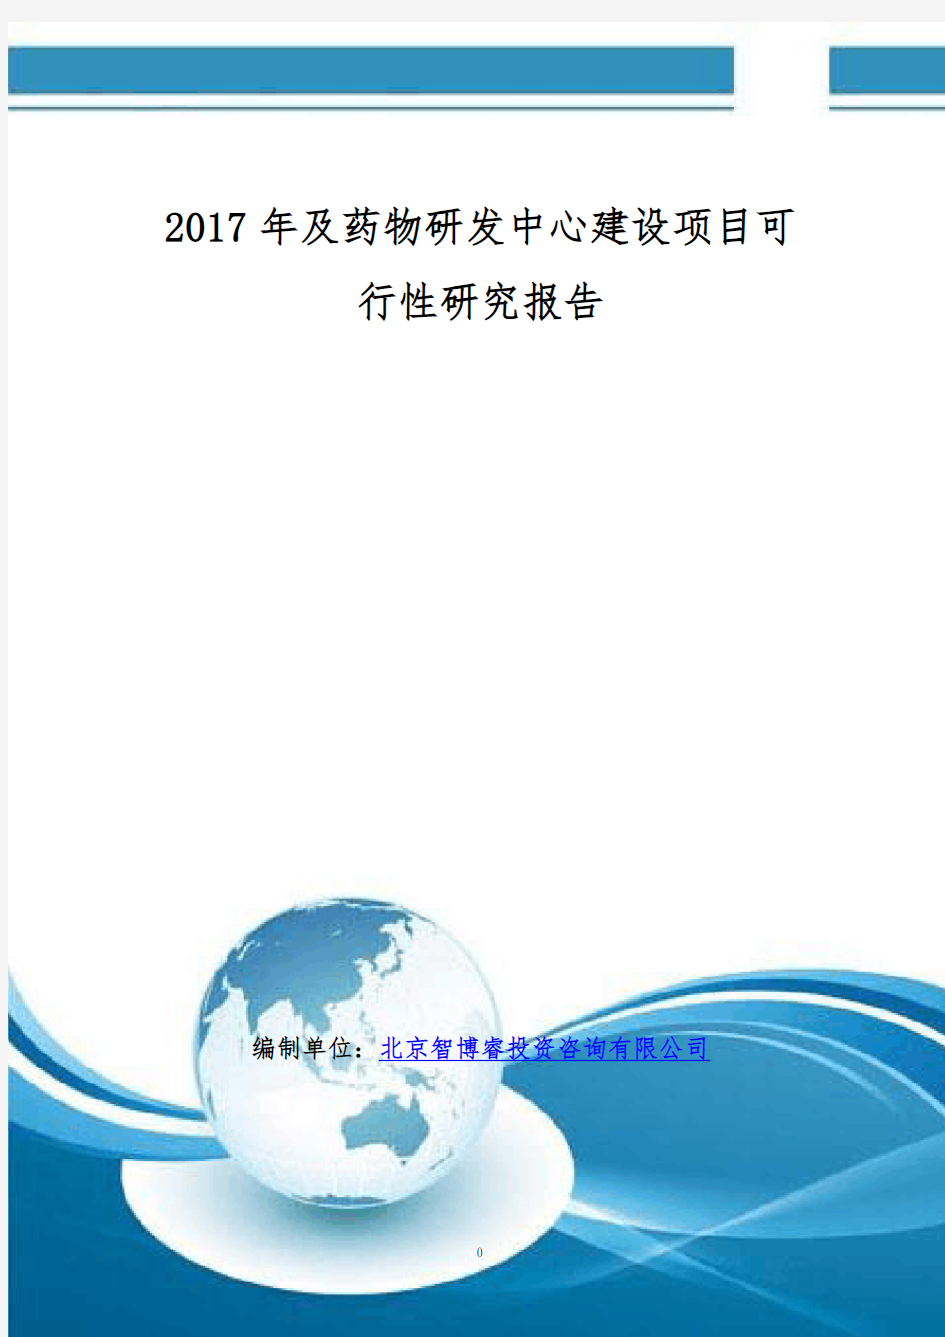 2017年及药物研发中心建设项目可行性研究报告(编制大纲)